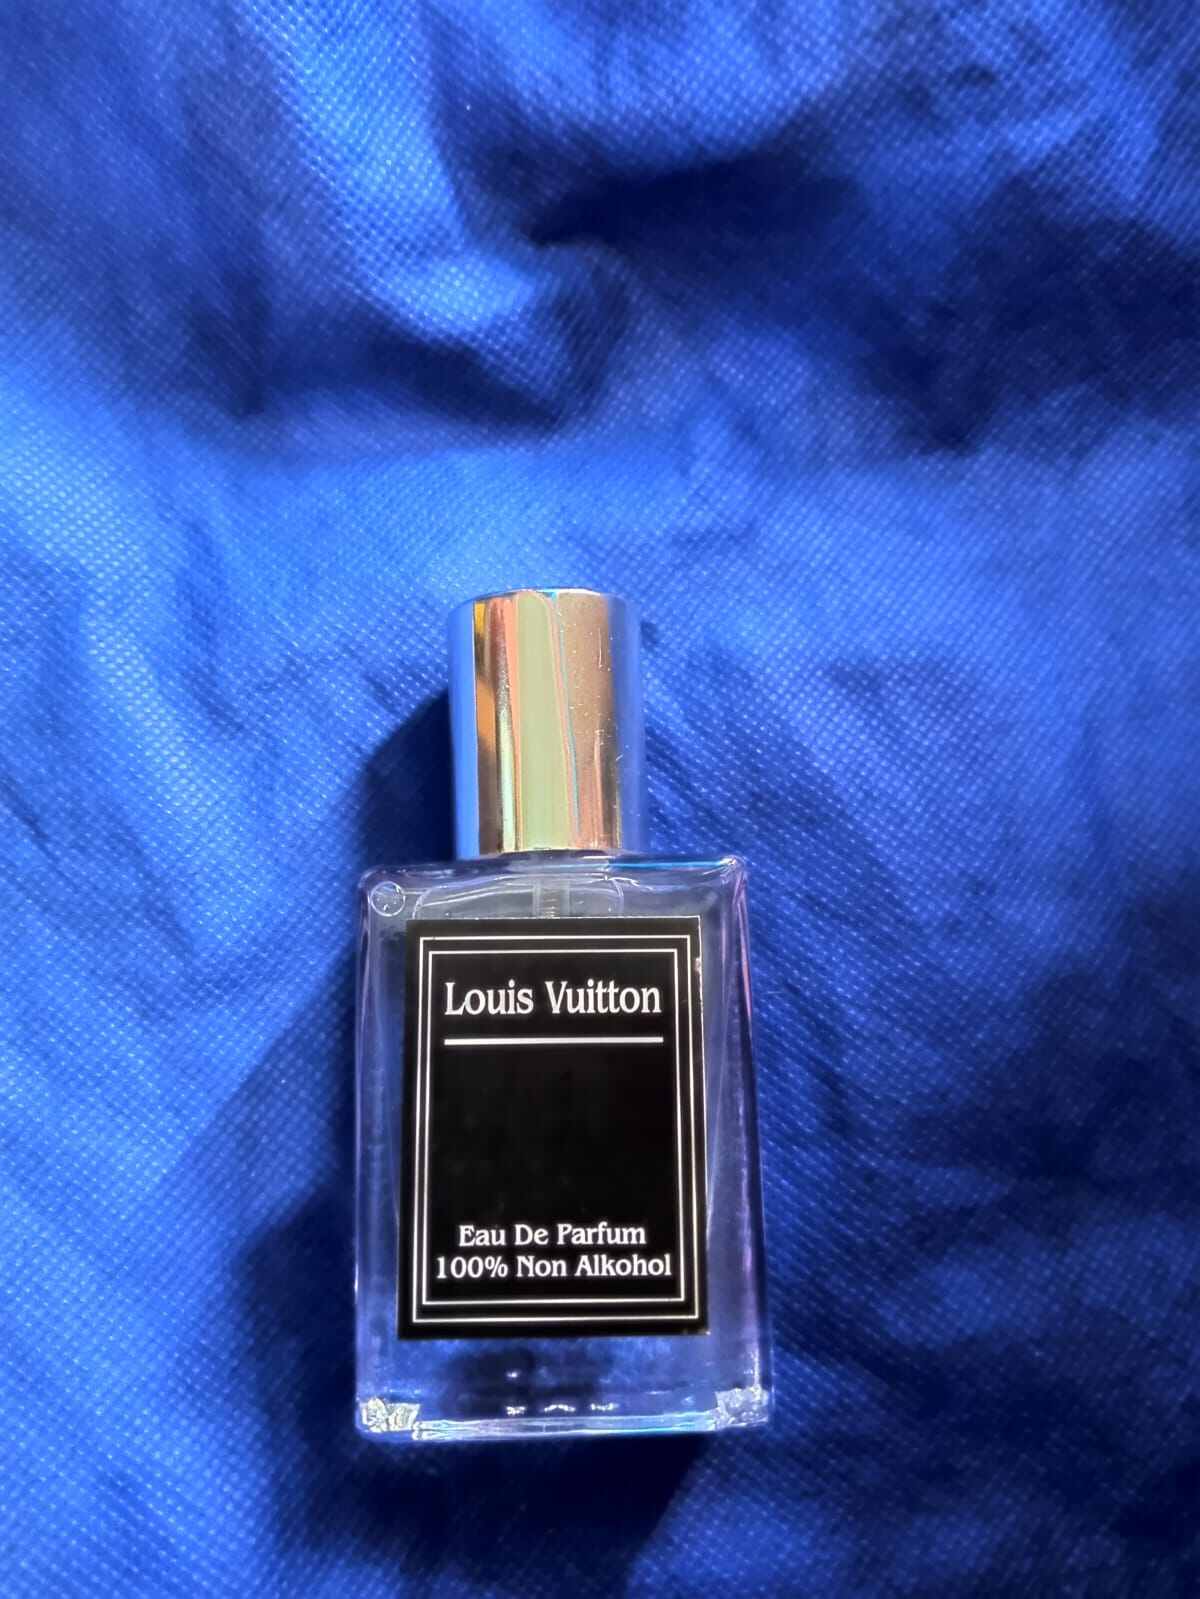 Louis Vuitton Au Hasard Eau De Parfum Vial 2ml –